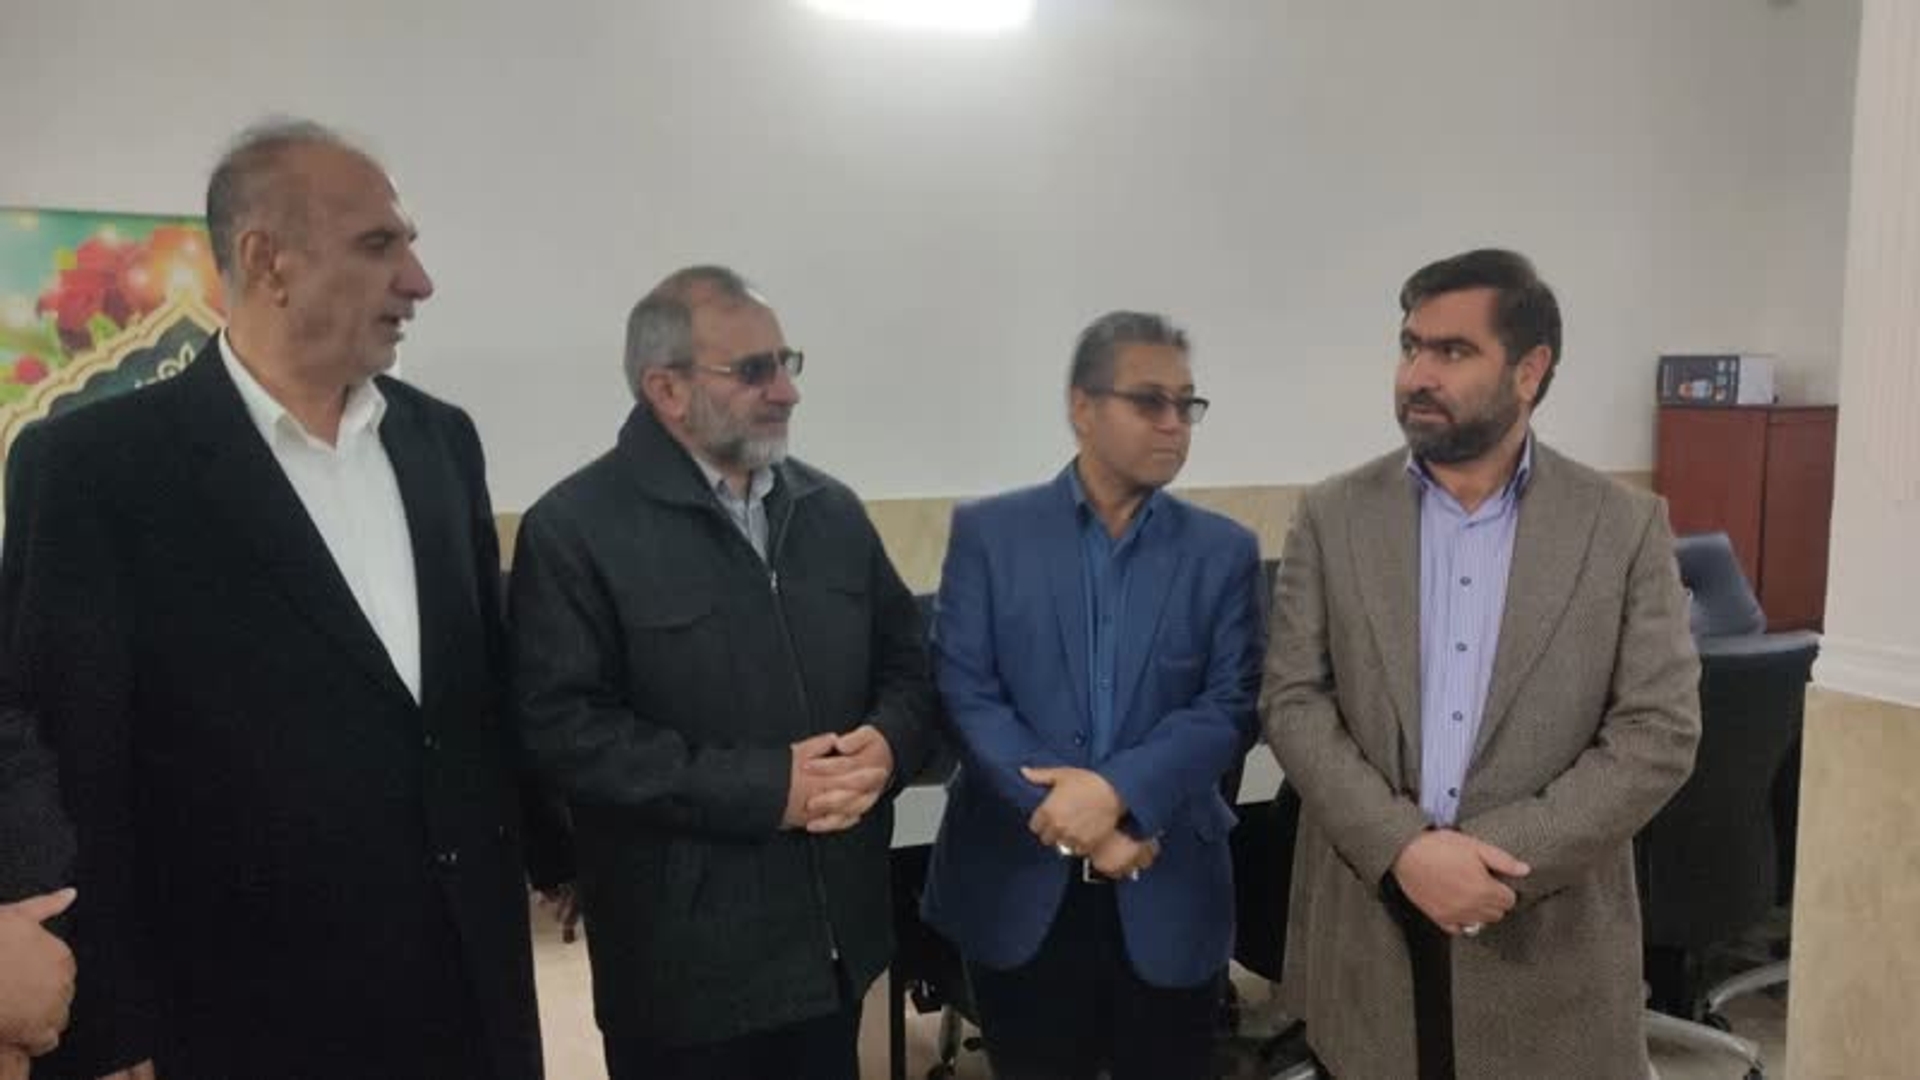 افتتاح ساختمان جدید شورای شهر فرمهین